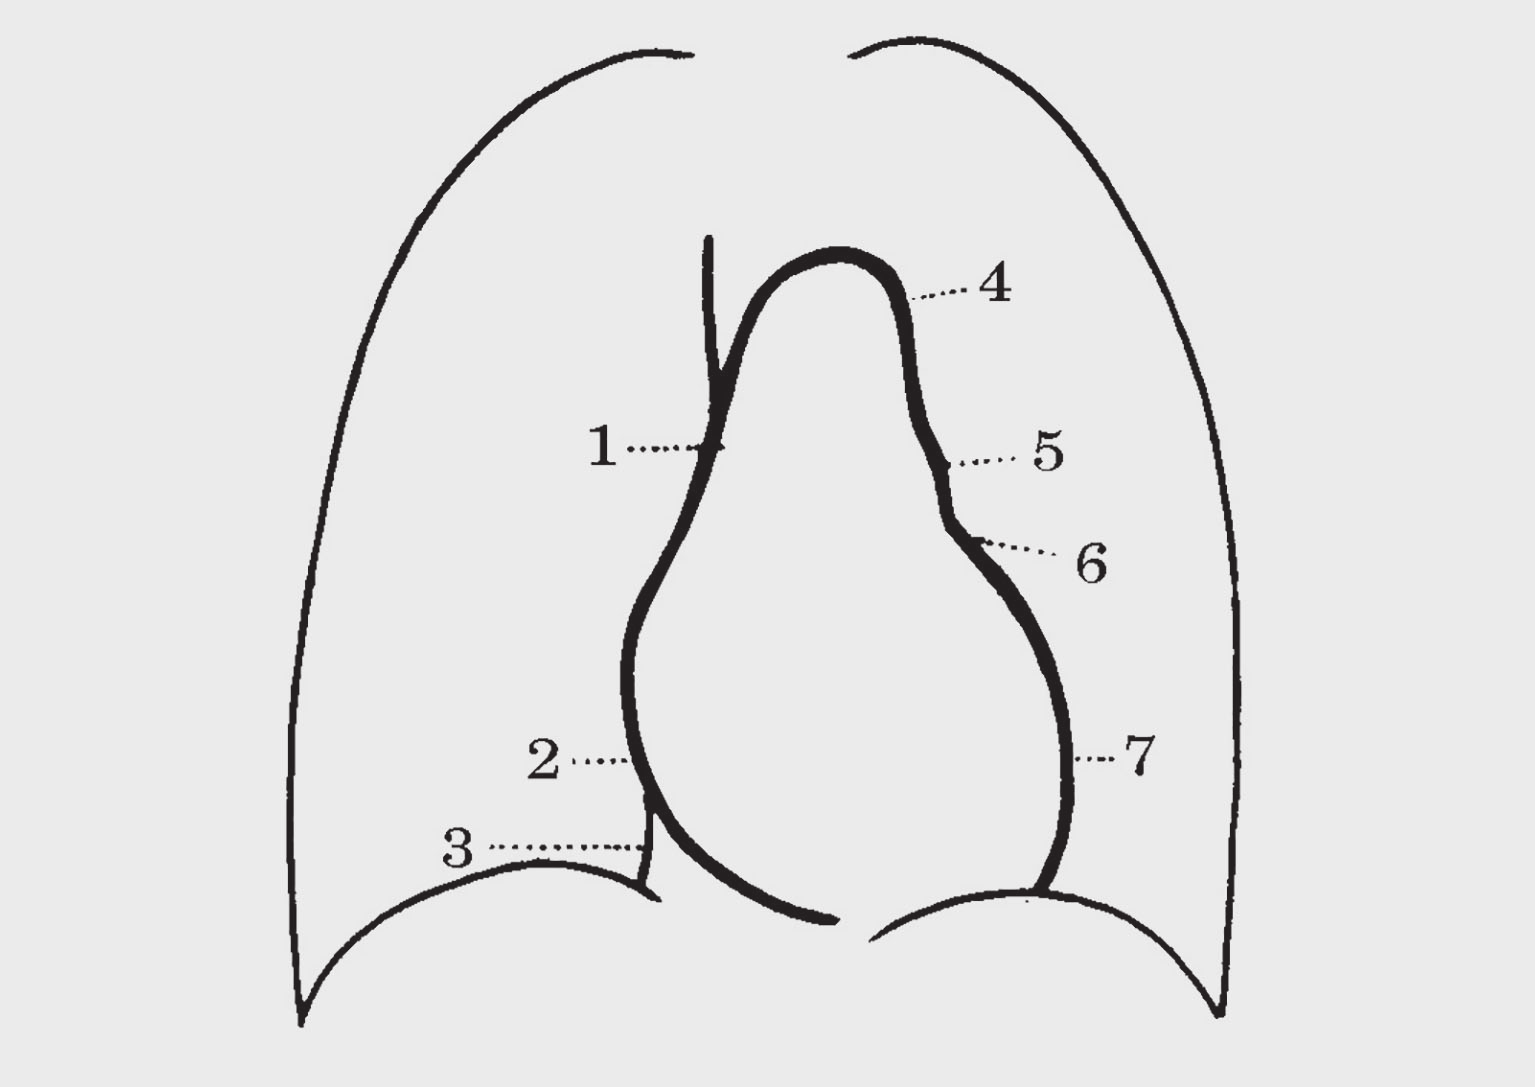 72 Βασικές Προβολές Αναπνευστικού Σύστηματος Οι ερωτήσεις 60-64 αναφέρονται στην παρακάτω εικόνα που δείχνει το σχήμα της καρδιαγγειακής σκιάς στην ο-π α/α θώρακα: Εικόνα 1.21. ( 1999 Κουμαριανός Δ.).